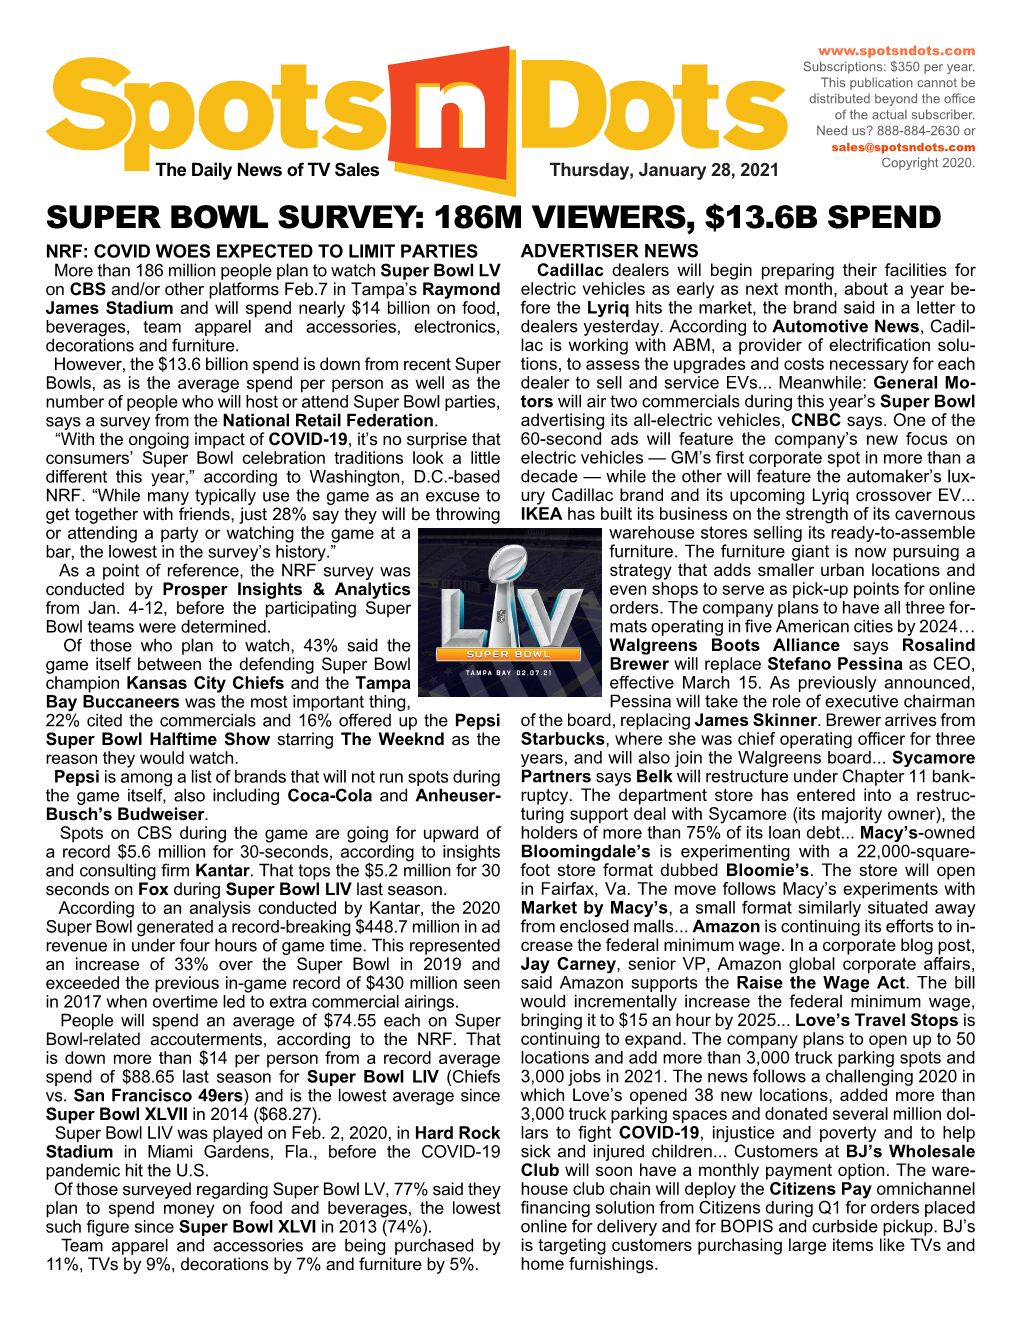 Super Bowl Survey: 186M Viewers, $13.6B Spend